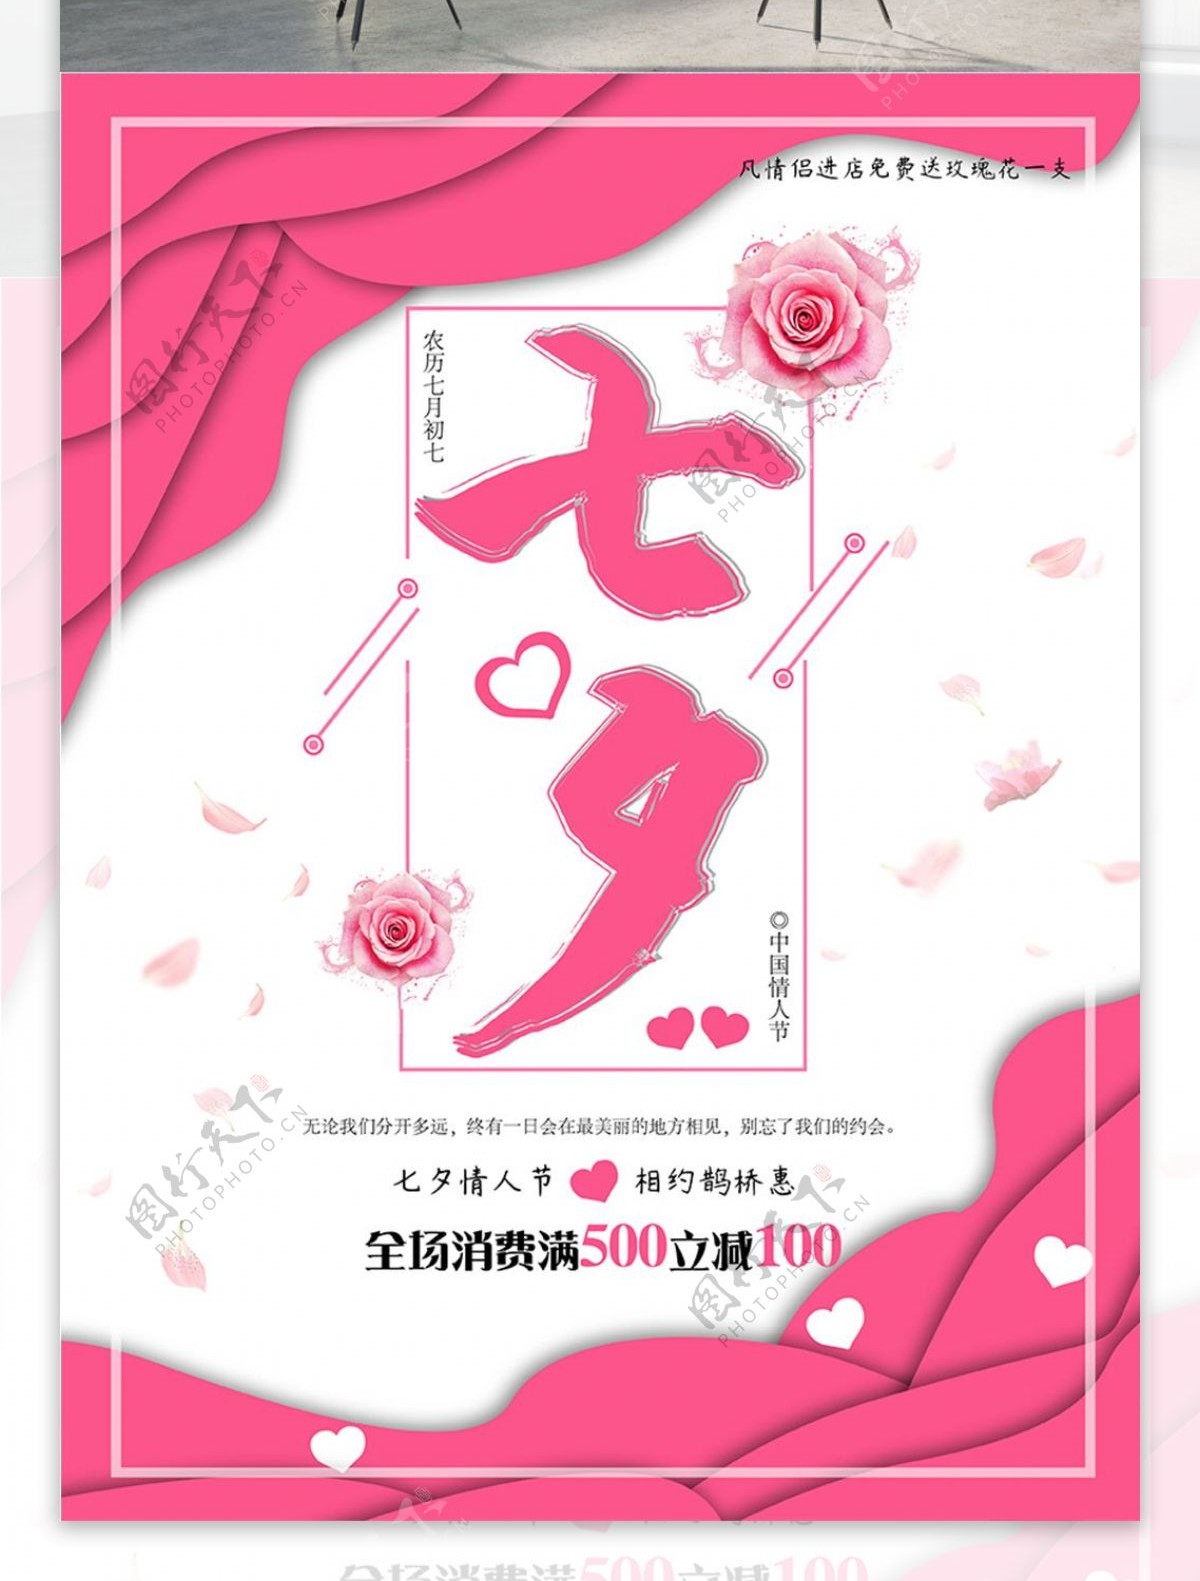 中国情人节之七夕唯美浪漫宣传海报